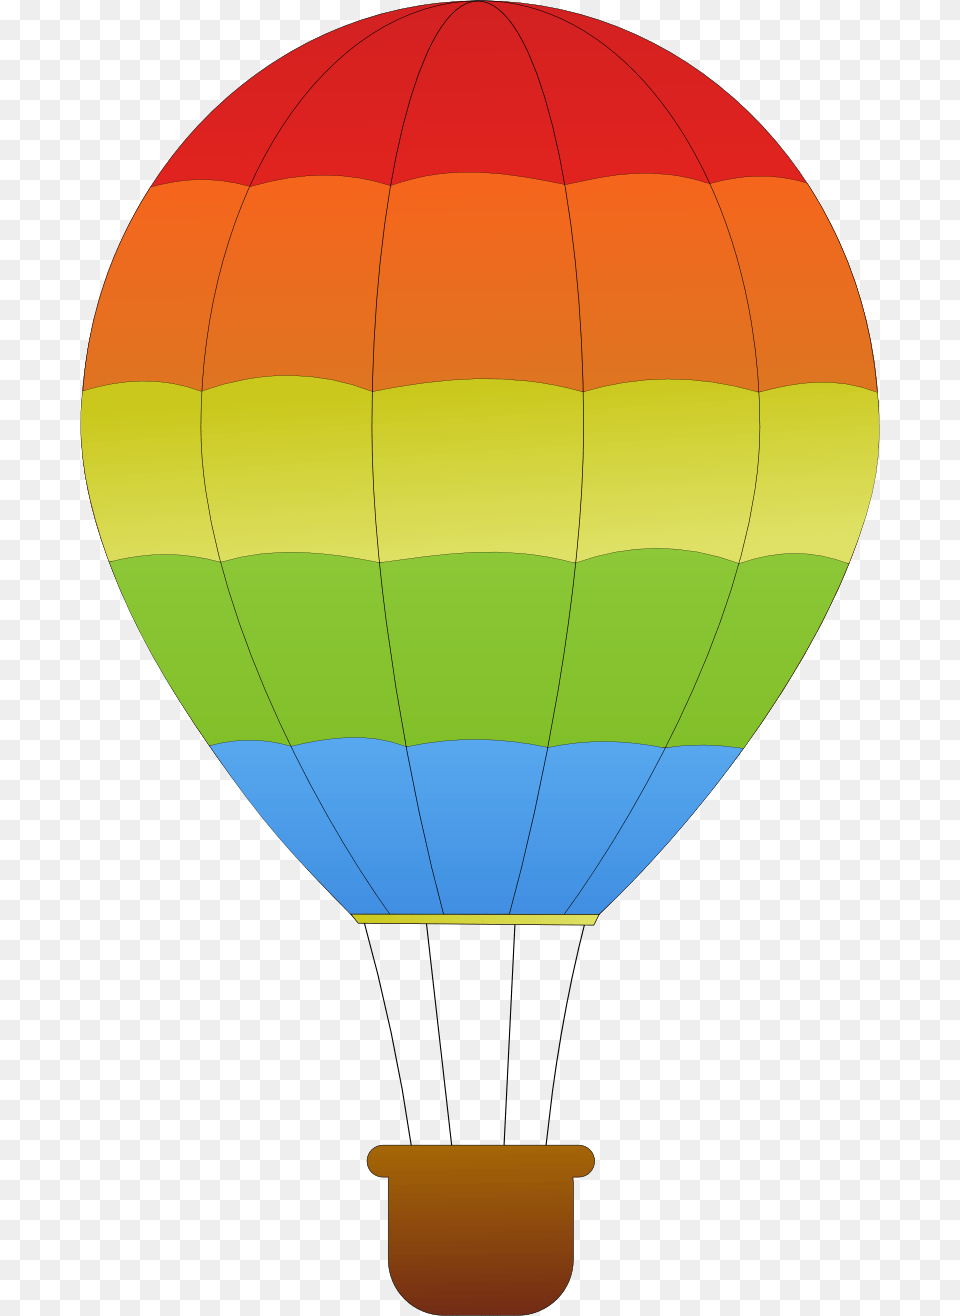 Horizontal Striped Hot Air Balloons, Aircraft, Hot Air Balloon, Transportation, Vehicle Free Png